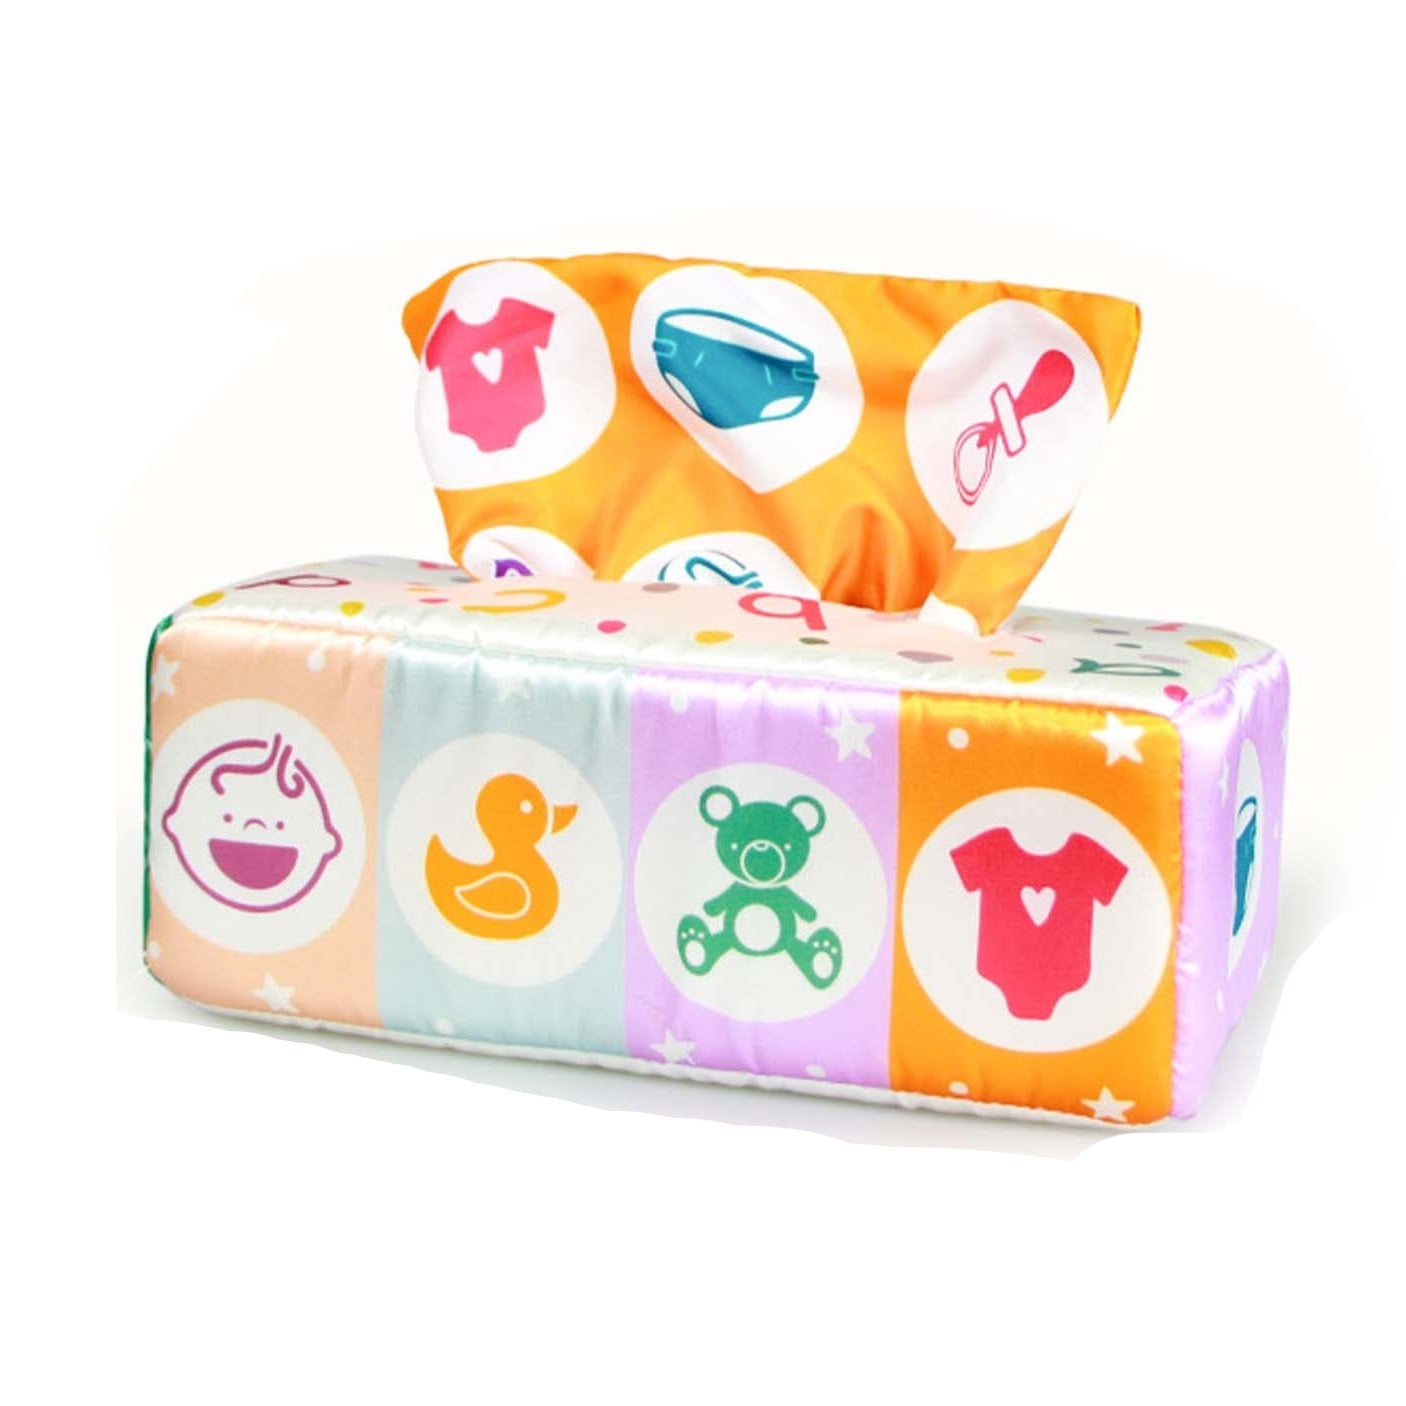 Magic Tissue Box Toy - Baby Nurish 